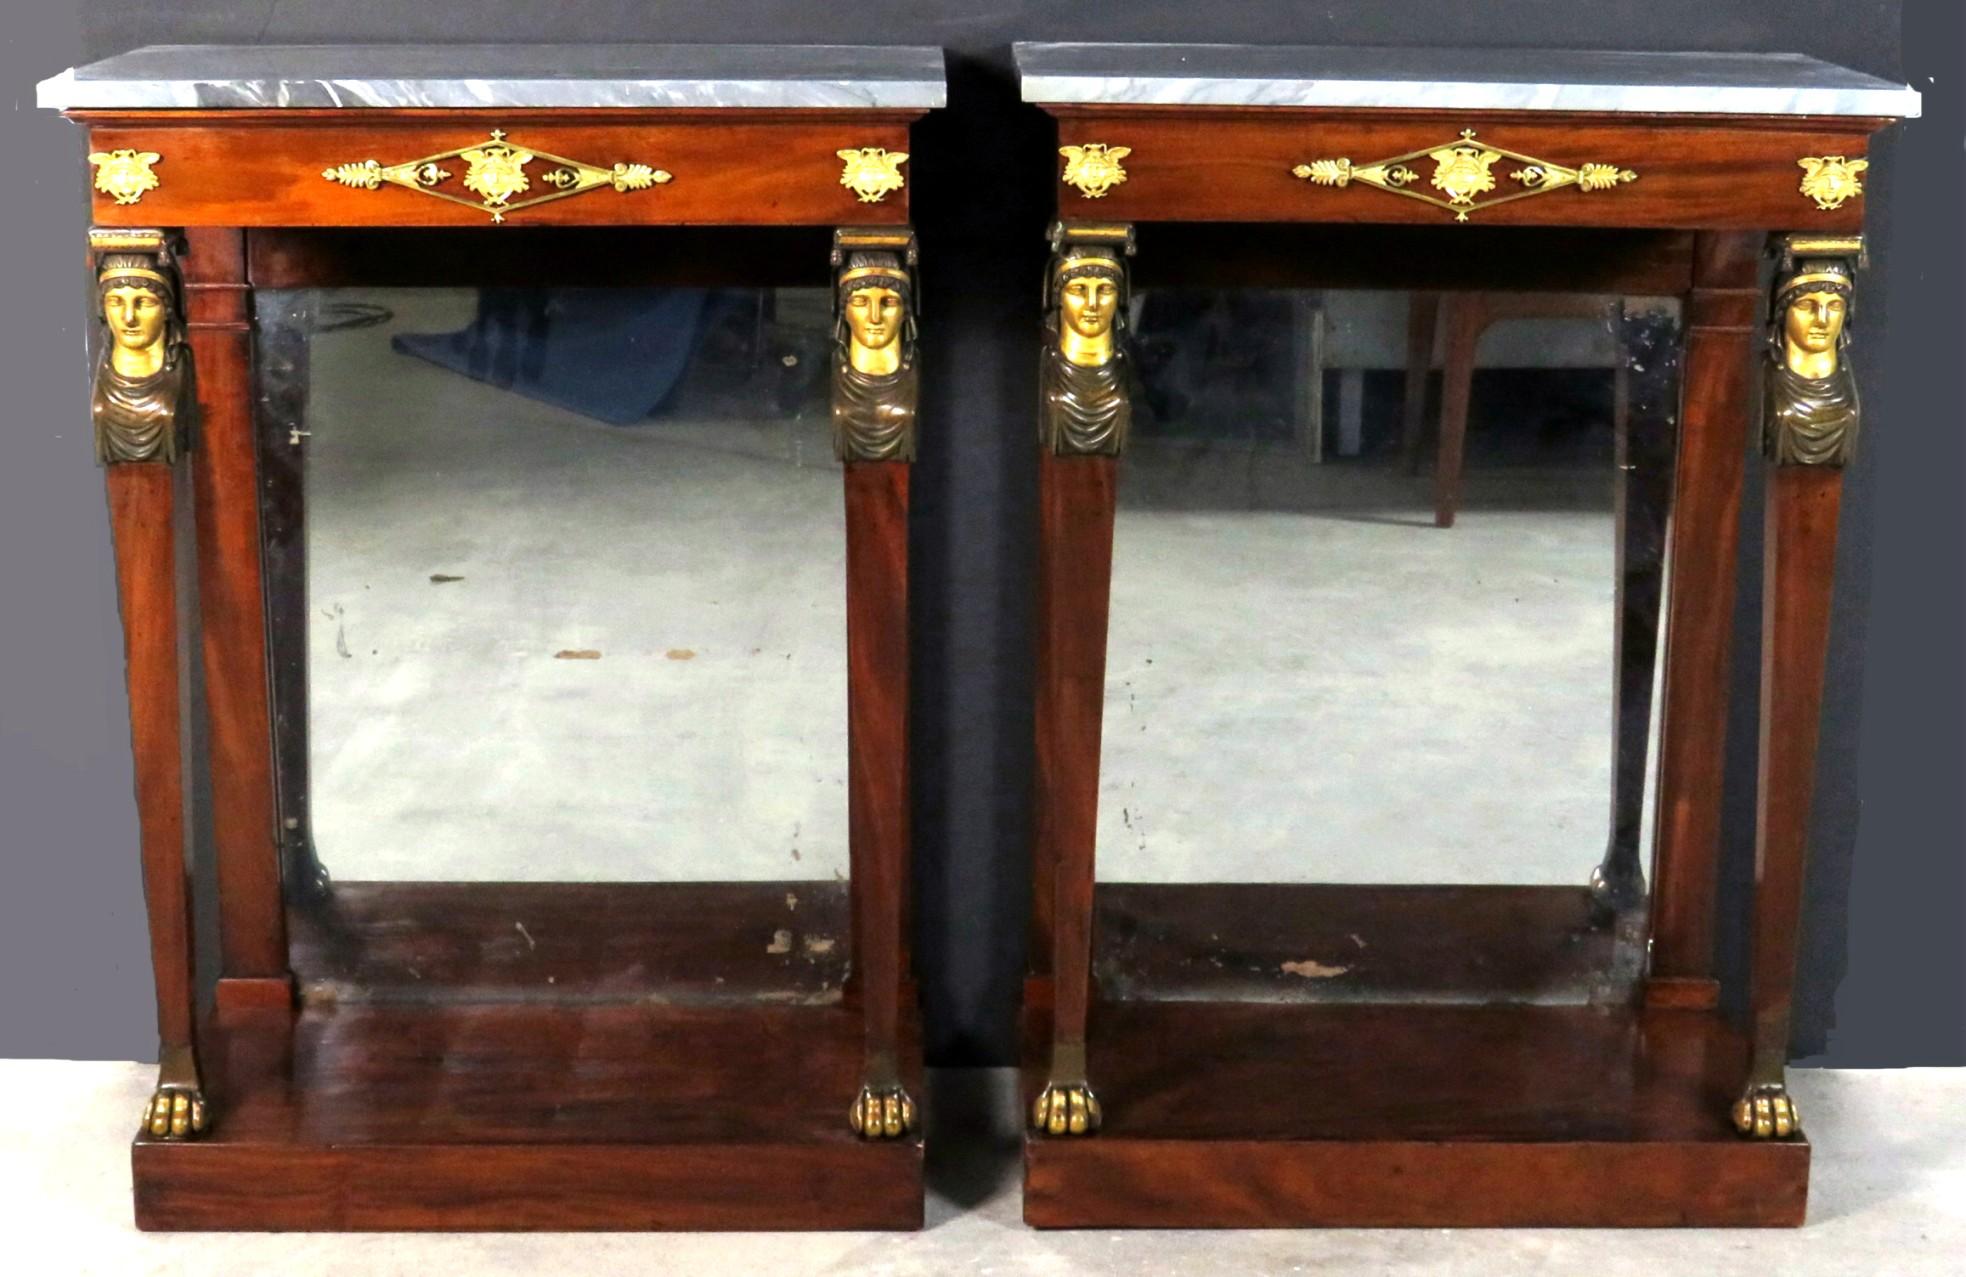 Ein sehr feines & diminutive Paar von frühen 19. Jahrhundert Französisch Empire-Periode Mahagoni Konsole / Pier-Tische, mit späteren grauen Marmorplatten (eine repariert) über einem abgeflachten Fries mit fein ziselierten vergoldeten